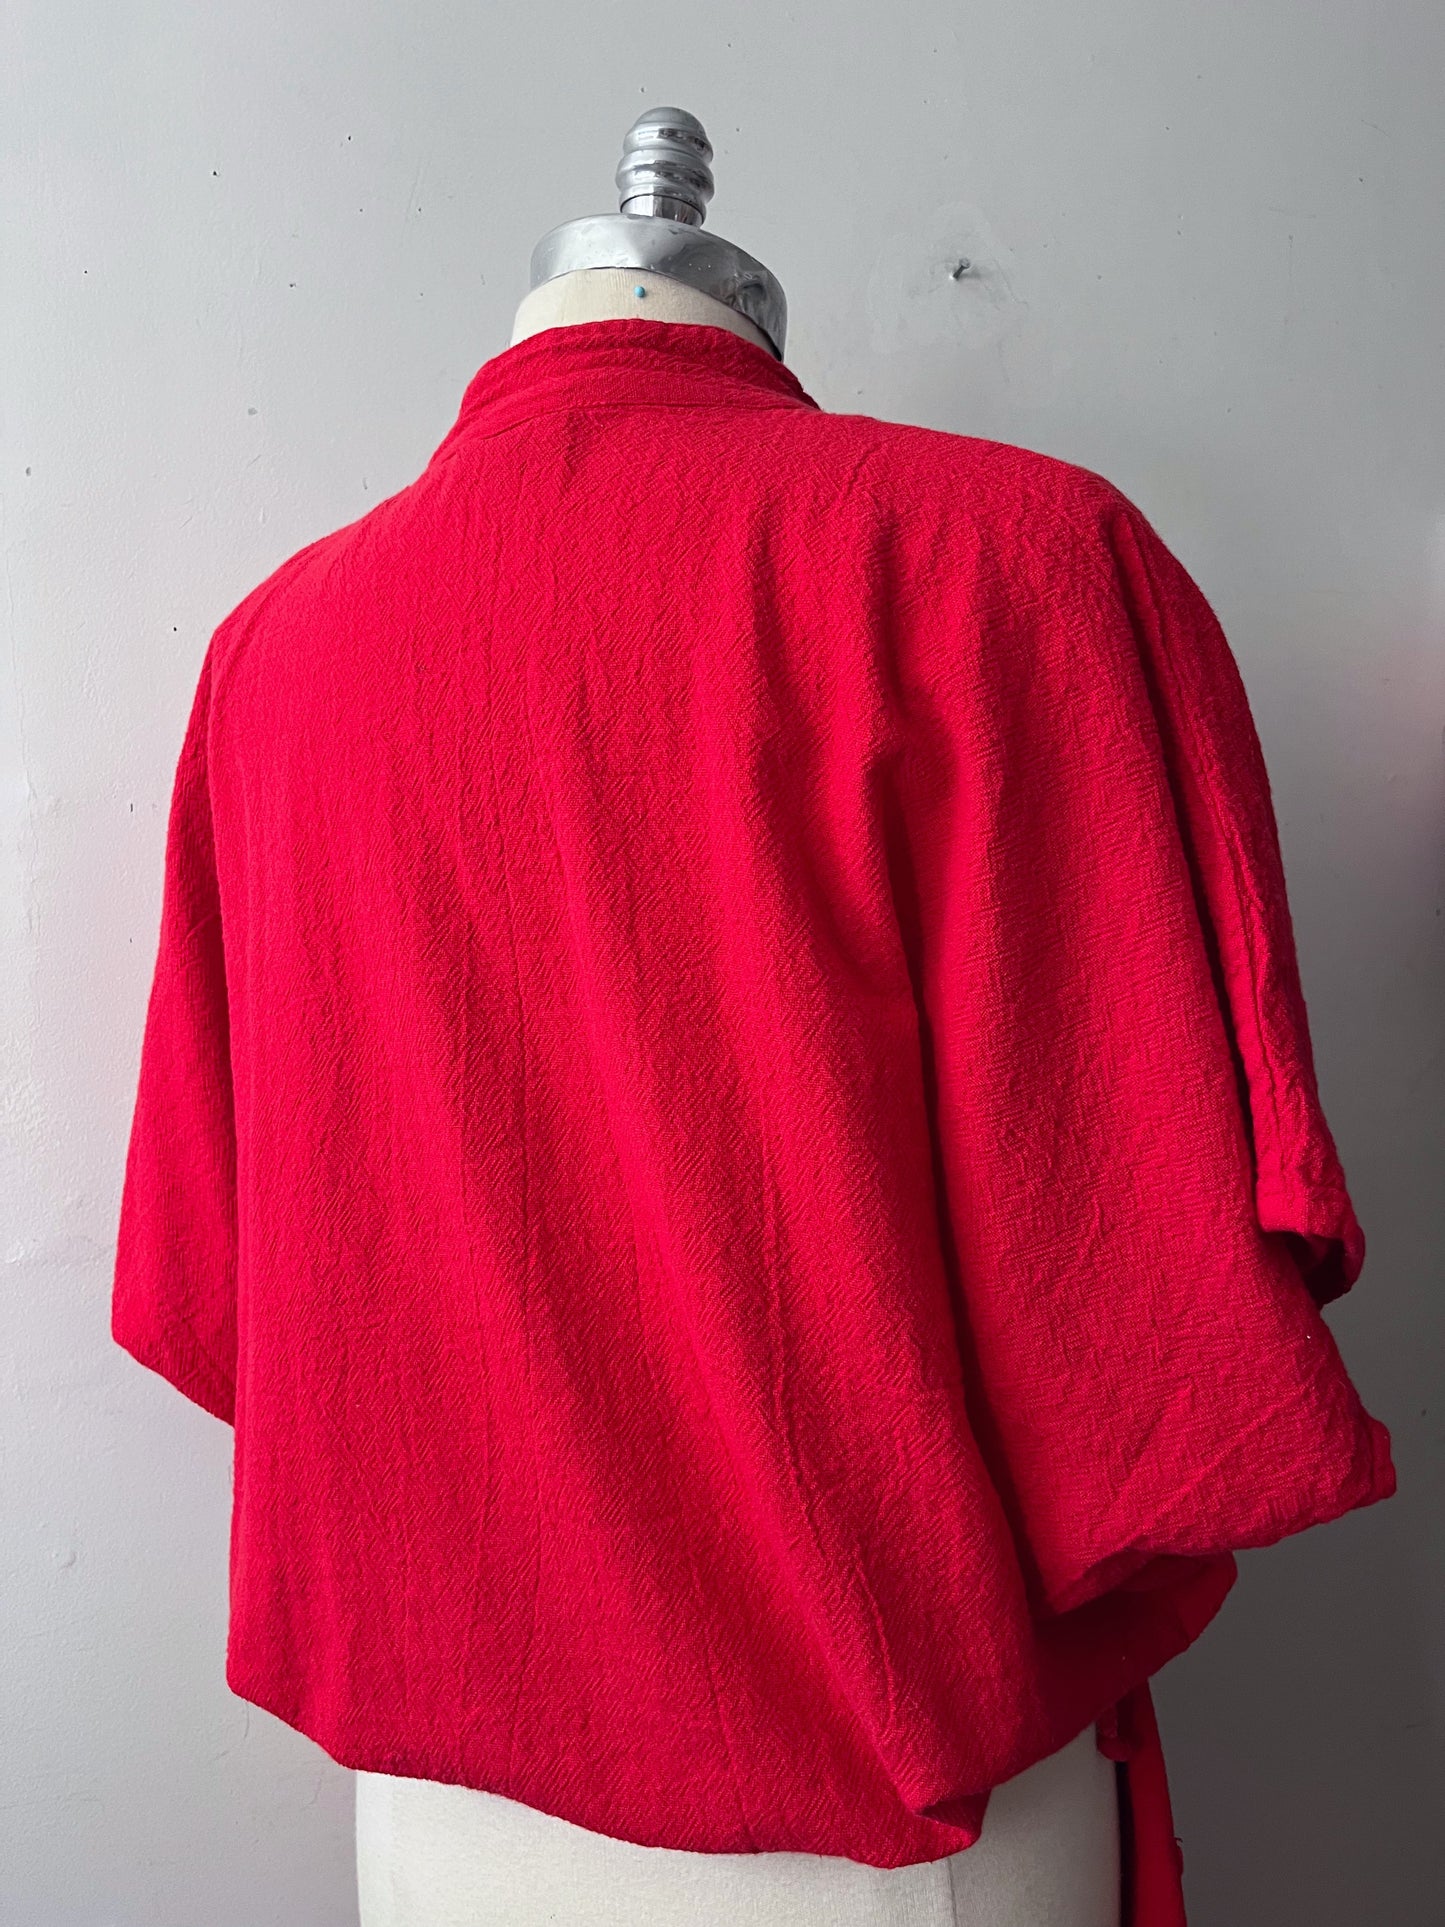 Cotton Canvas Top & Pants Set- Red| S/M